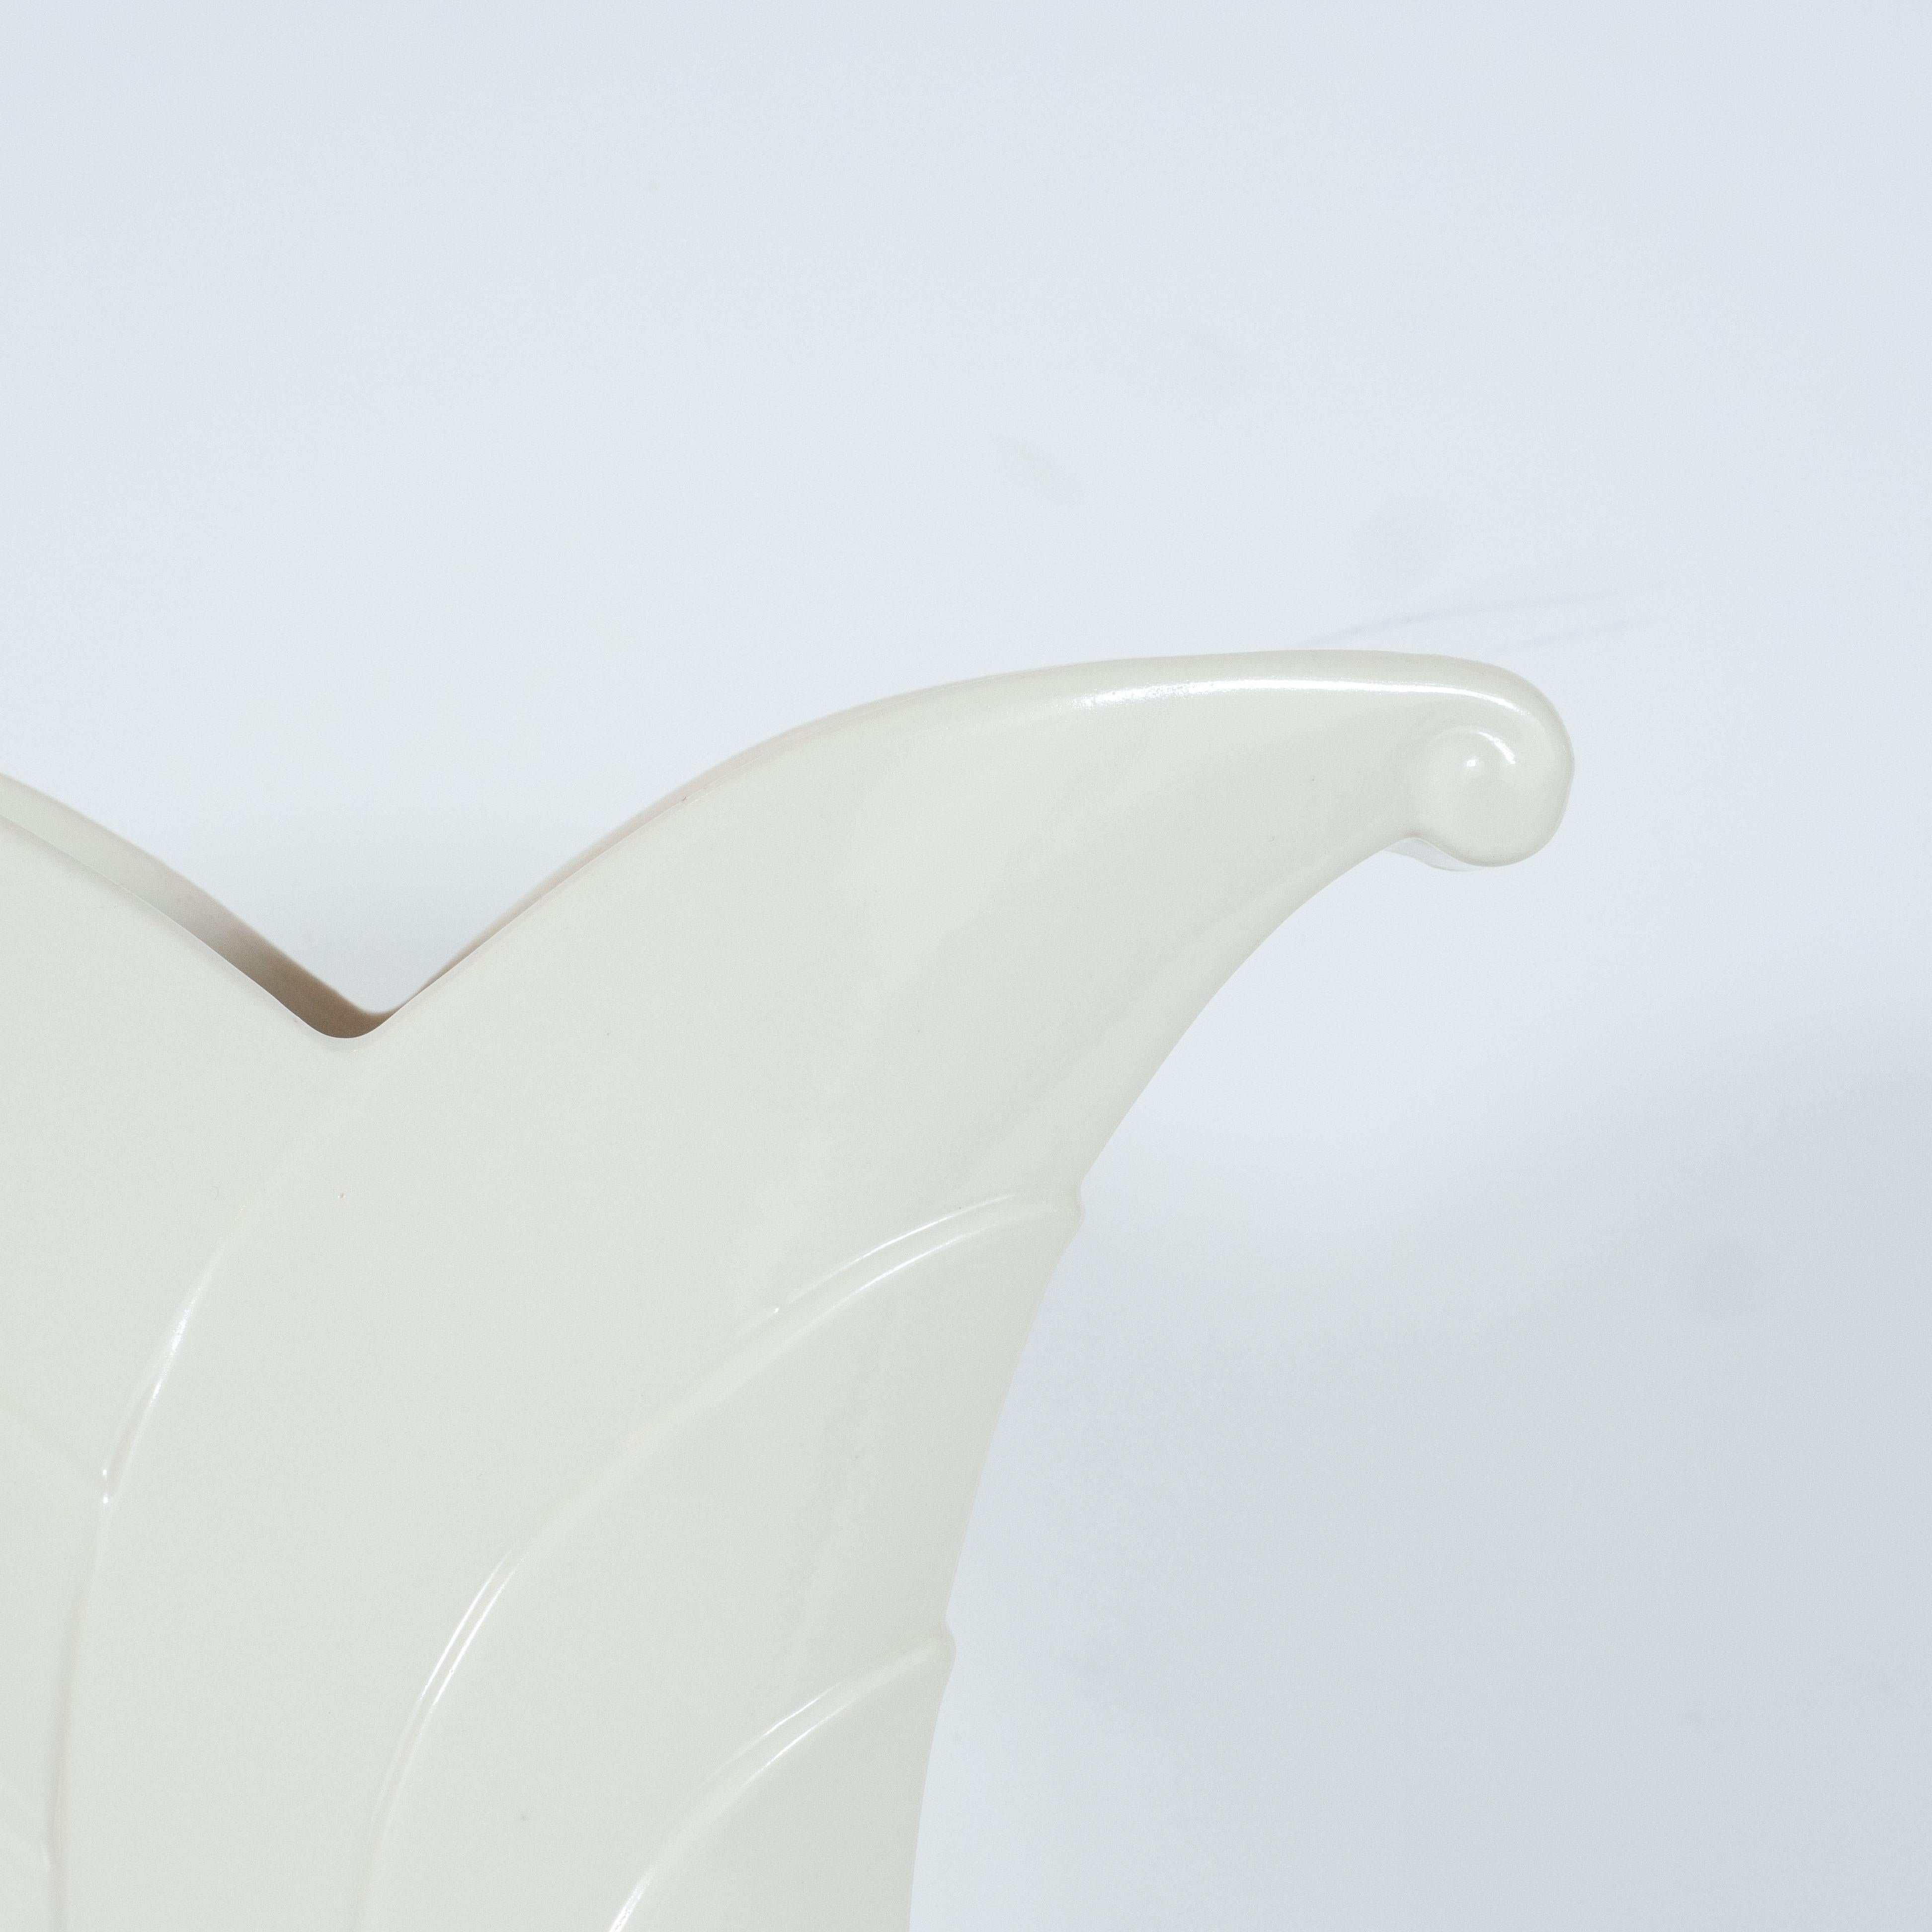 form of white porcelain